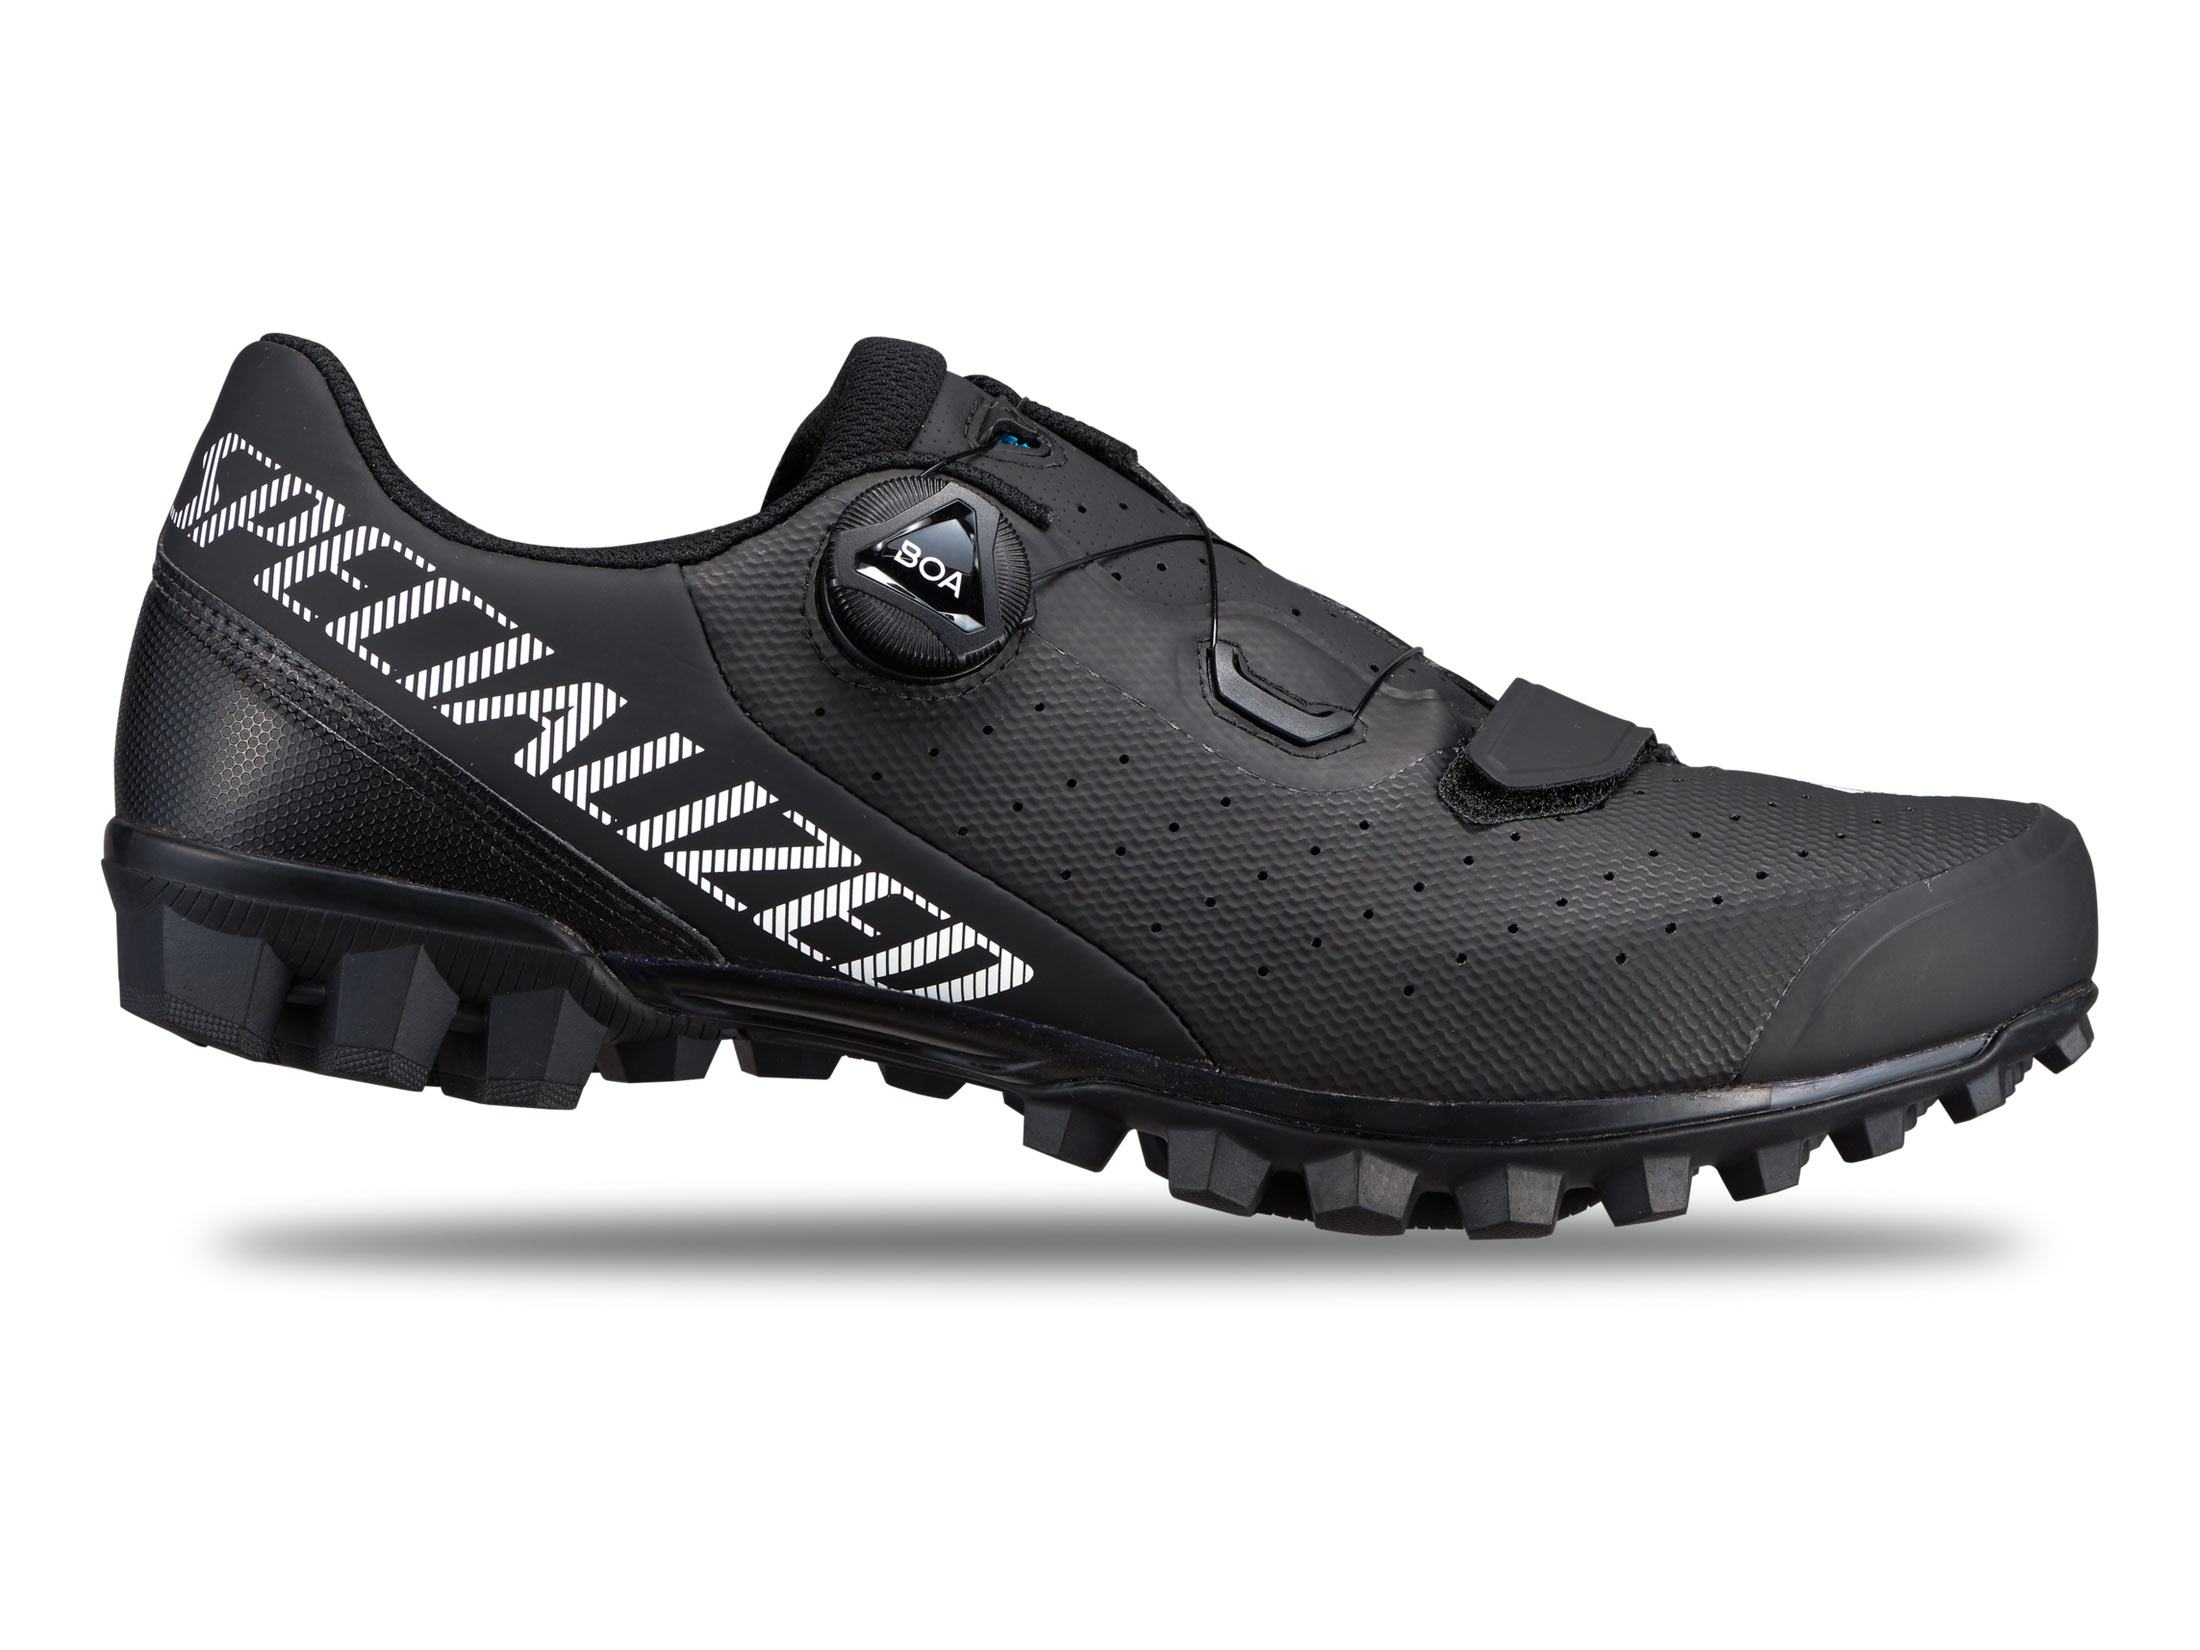 Παπούτσια Specialized Recon 2.0 Mountain - Black